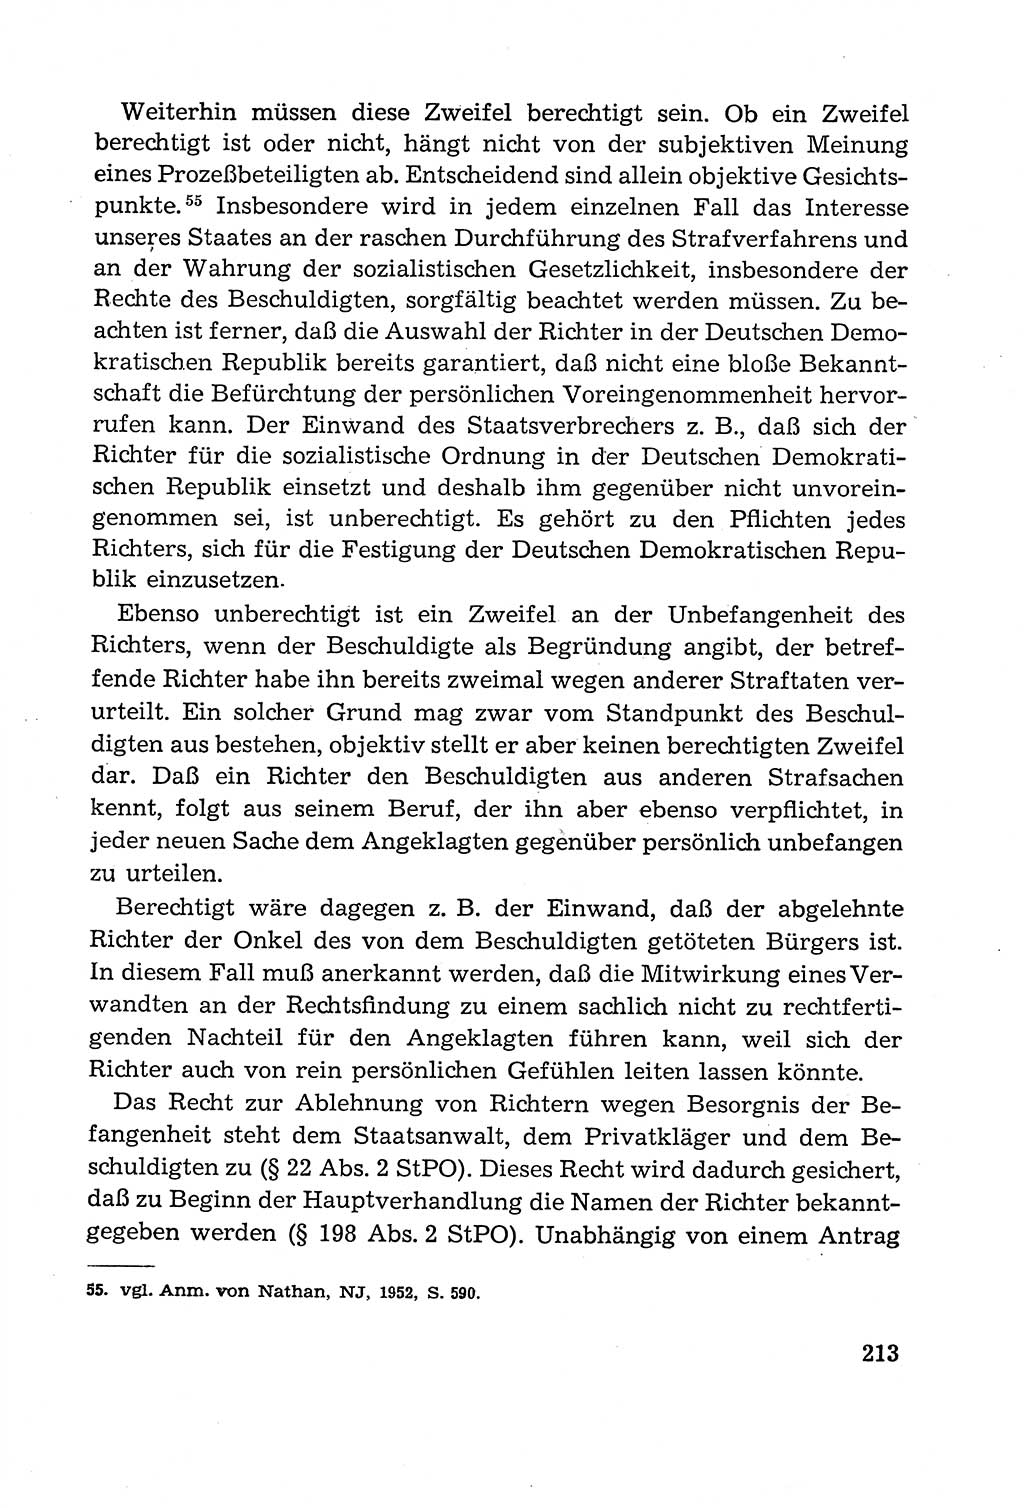 Leitfaden des Strafprozeßrechts der Deutschen Demokratischen Republik (DDR) 1959, Seite 213 (LF StPR DDR 1959, S. 213)